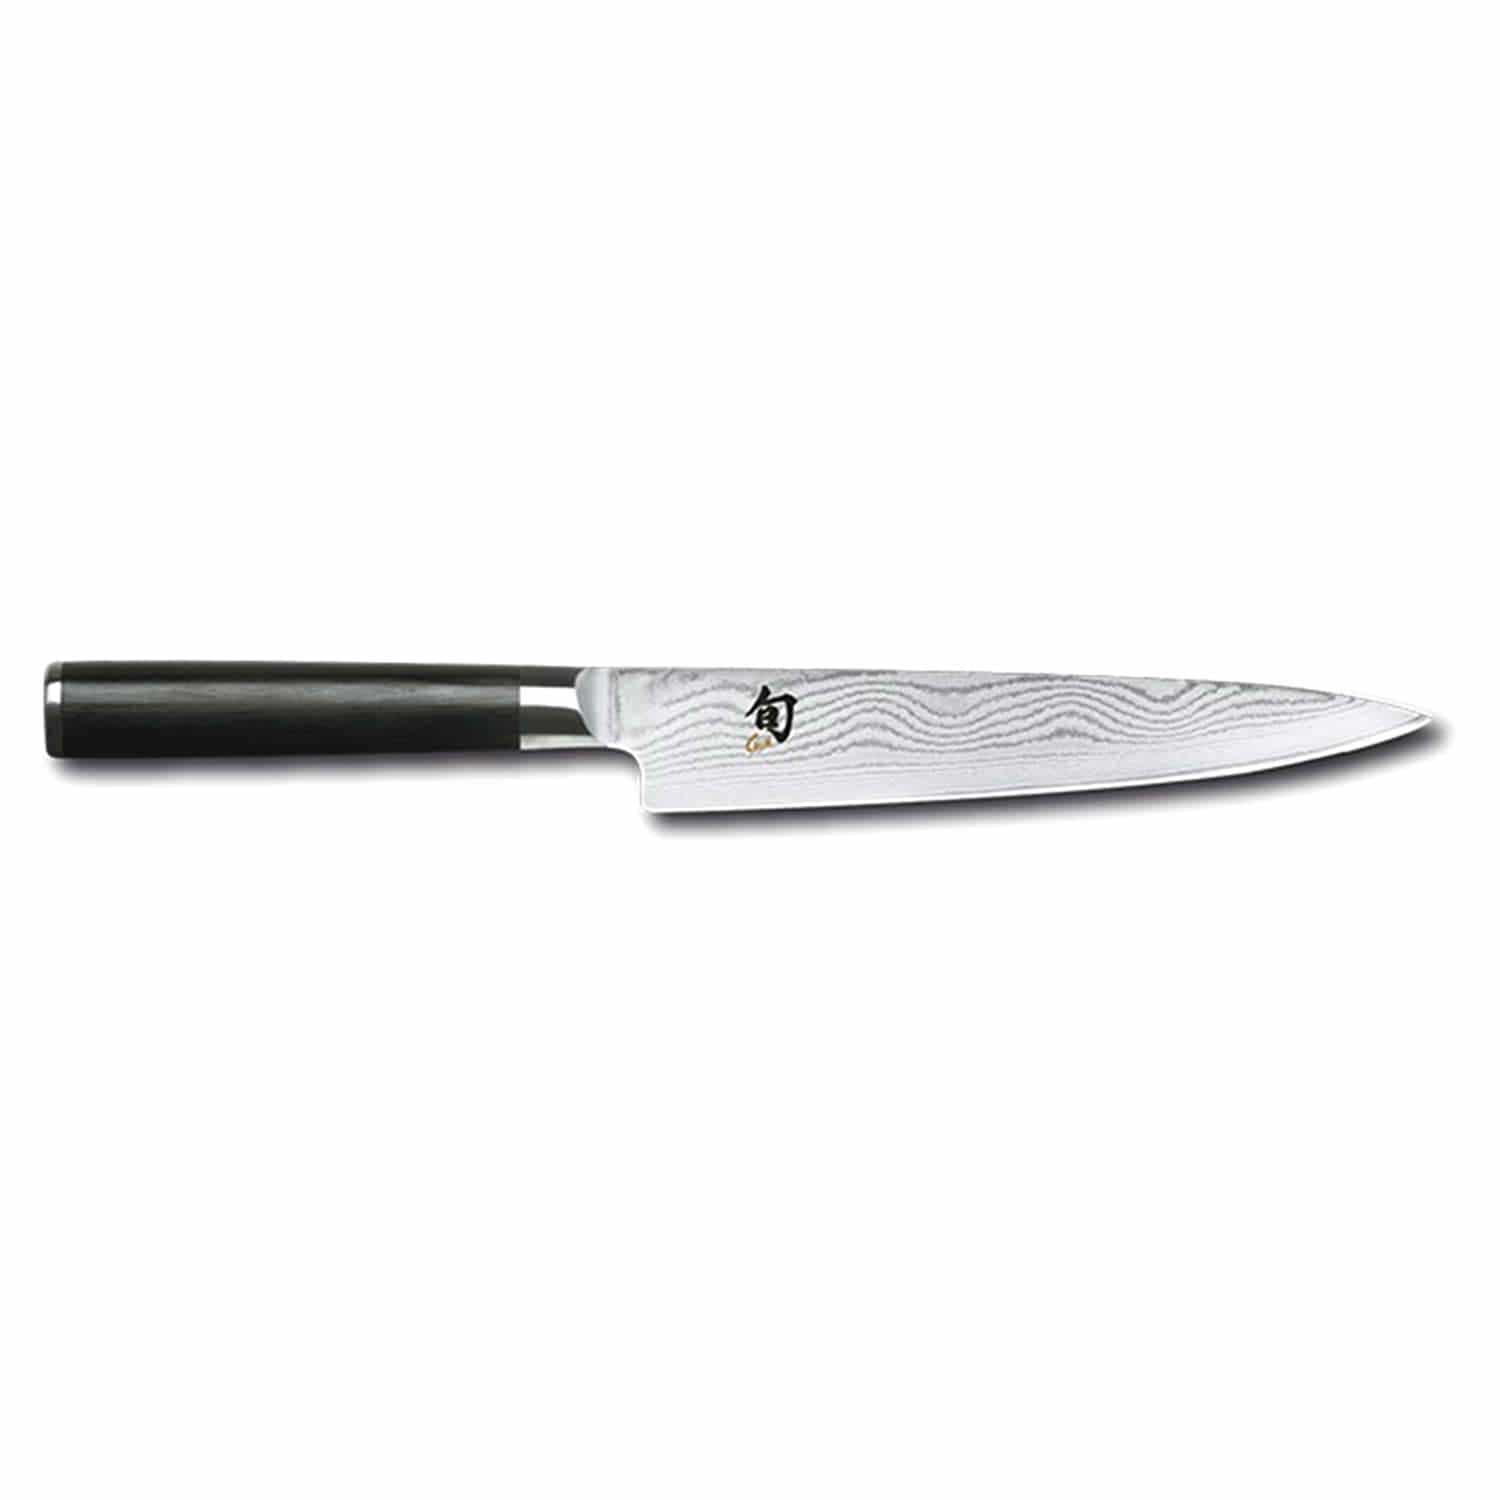 كاي شون 6 سكين متعدد الاستخدامات - اسود، 15 سم - DM-0701 - Jashanmal Home